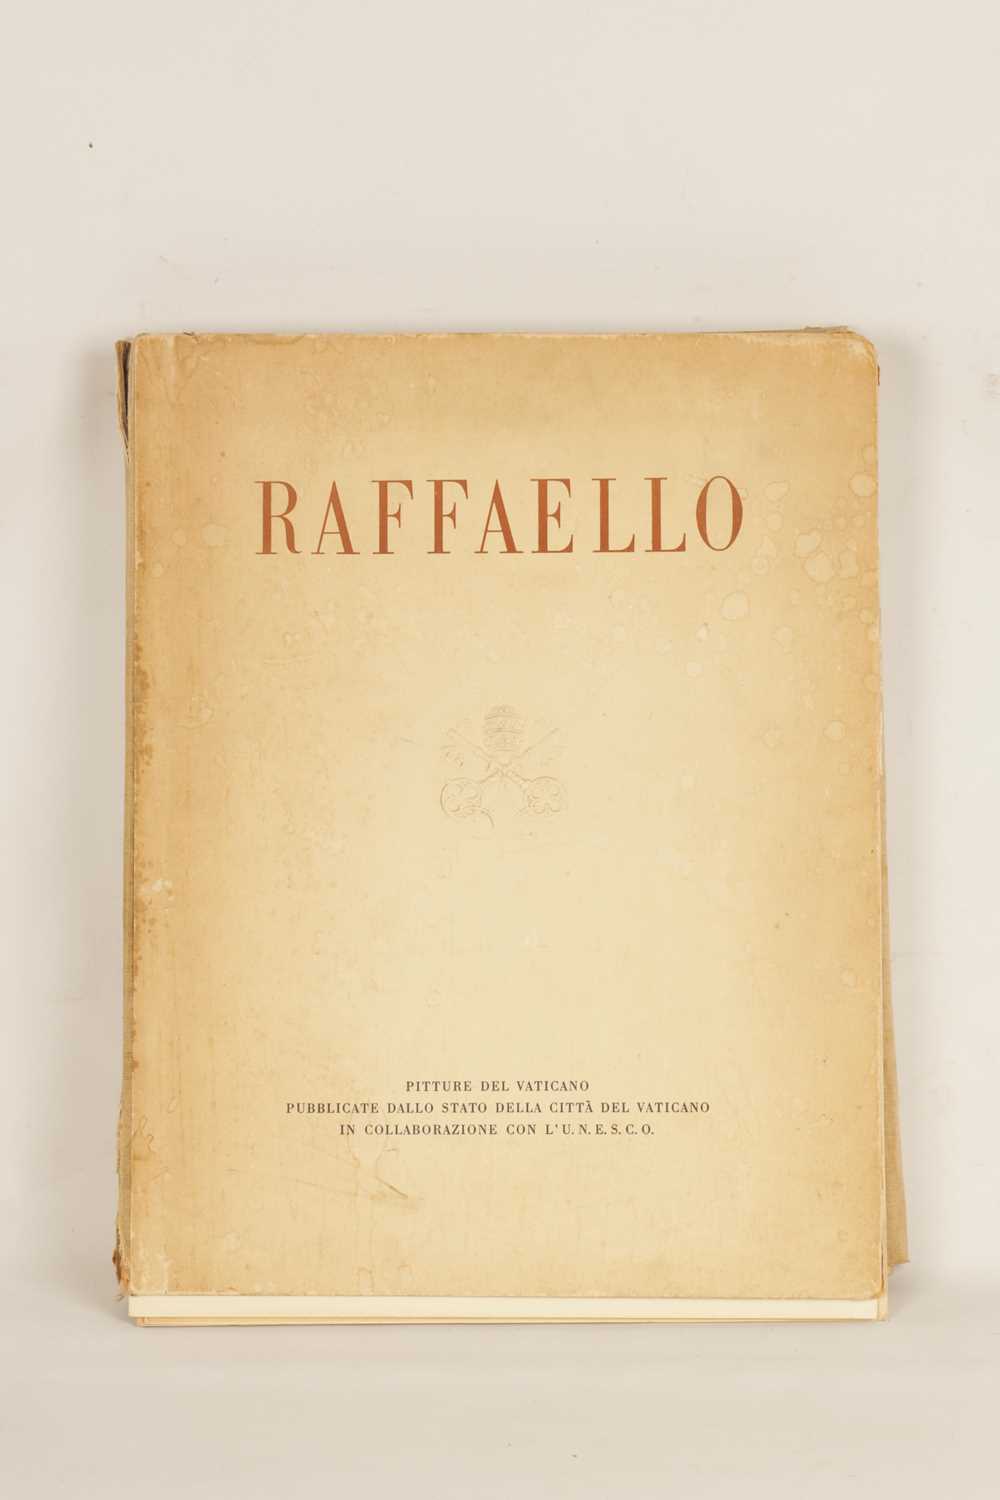 A FULLY ILLUSTRATED BOOK “RAFFEALLO PICTURE DEL VATICANO” - Image 3 of 13